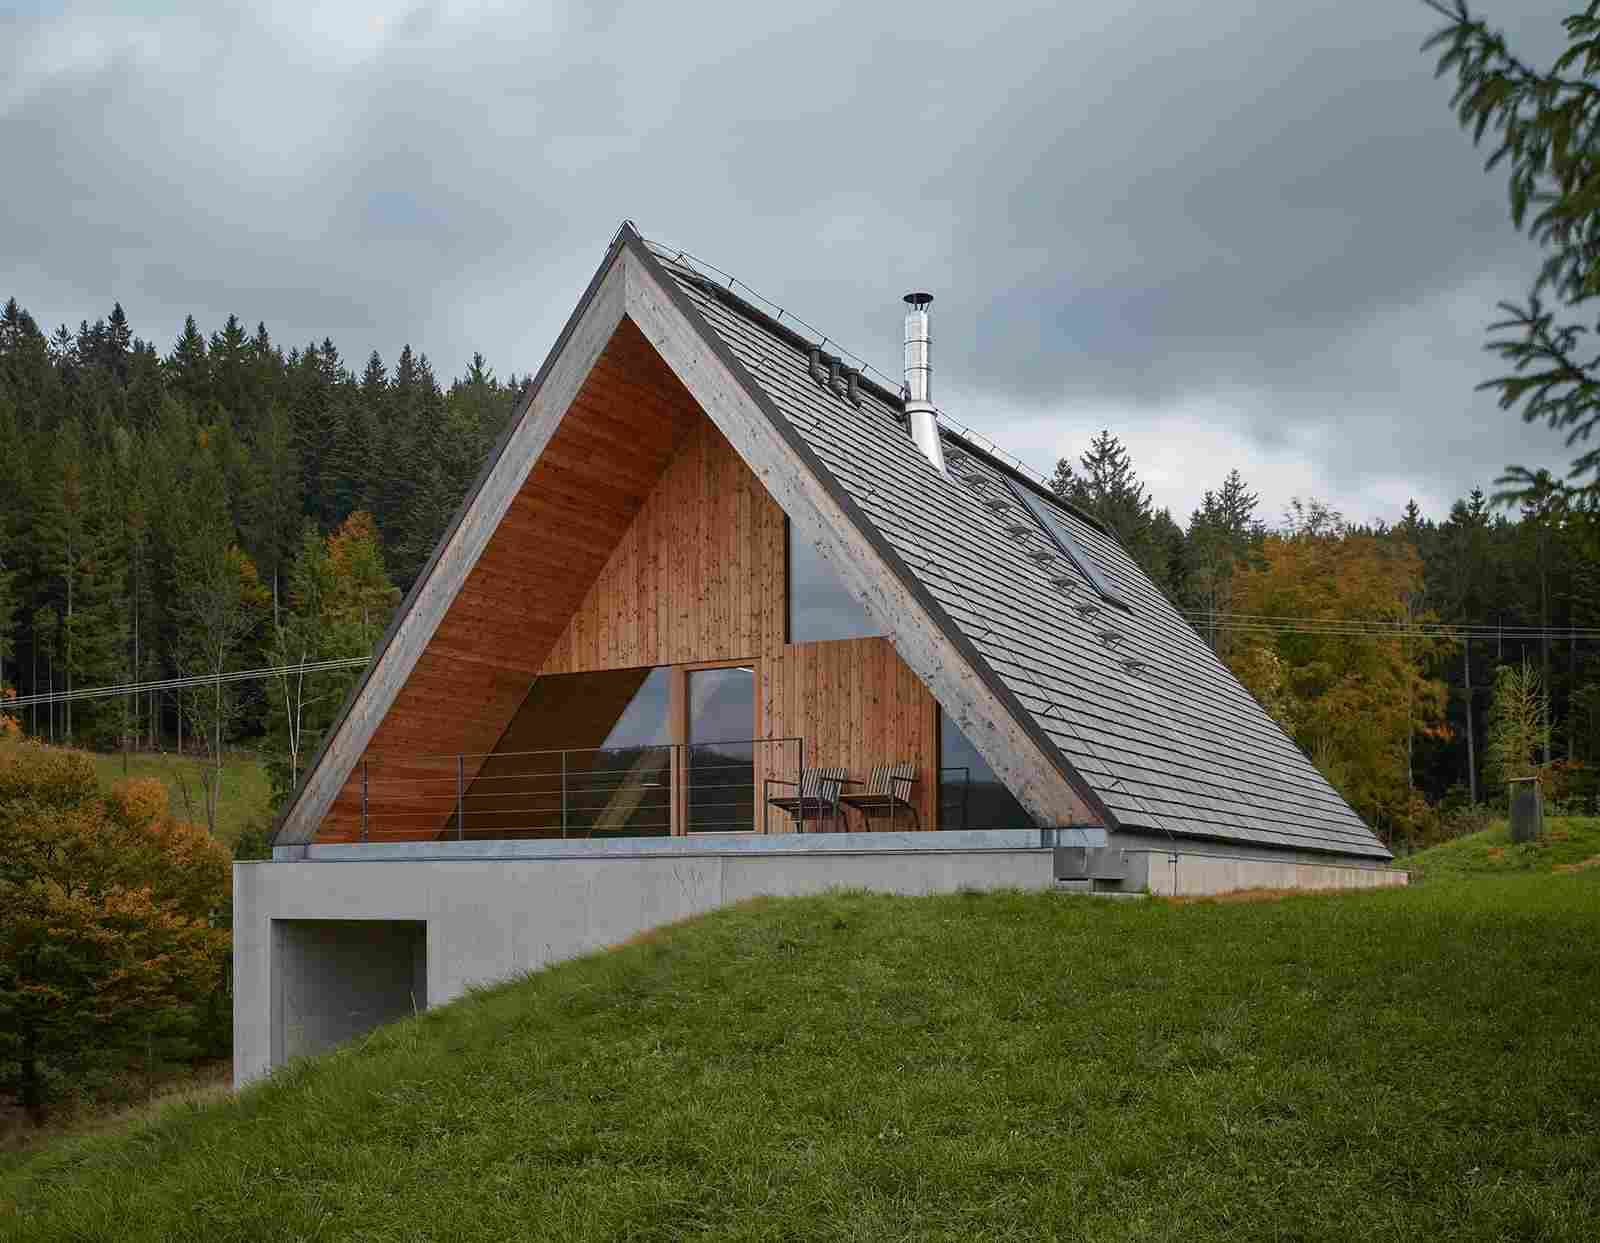 Дом для отдыха в Чехии горный, почти, лиственницы, станет, части, пейзаж, транслируя, бетона, выполнена, пещерную, атмосферу, тяжёлая, землю, уходящая, Частично, скрыты, оформленные, платформа, Архитектор, проекте